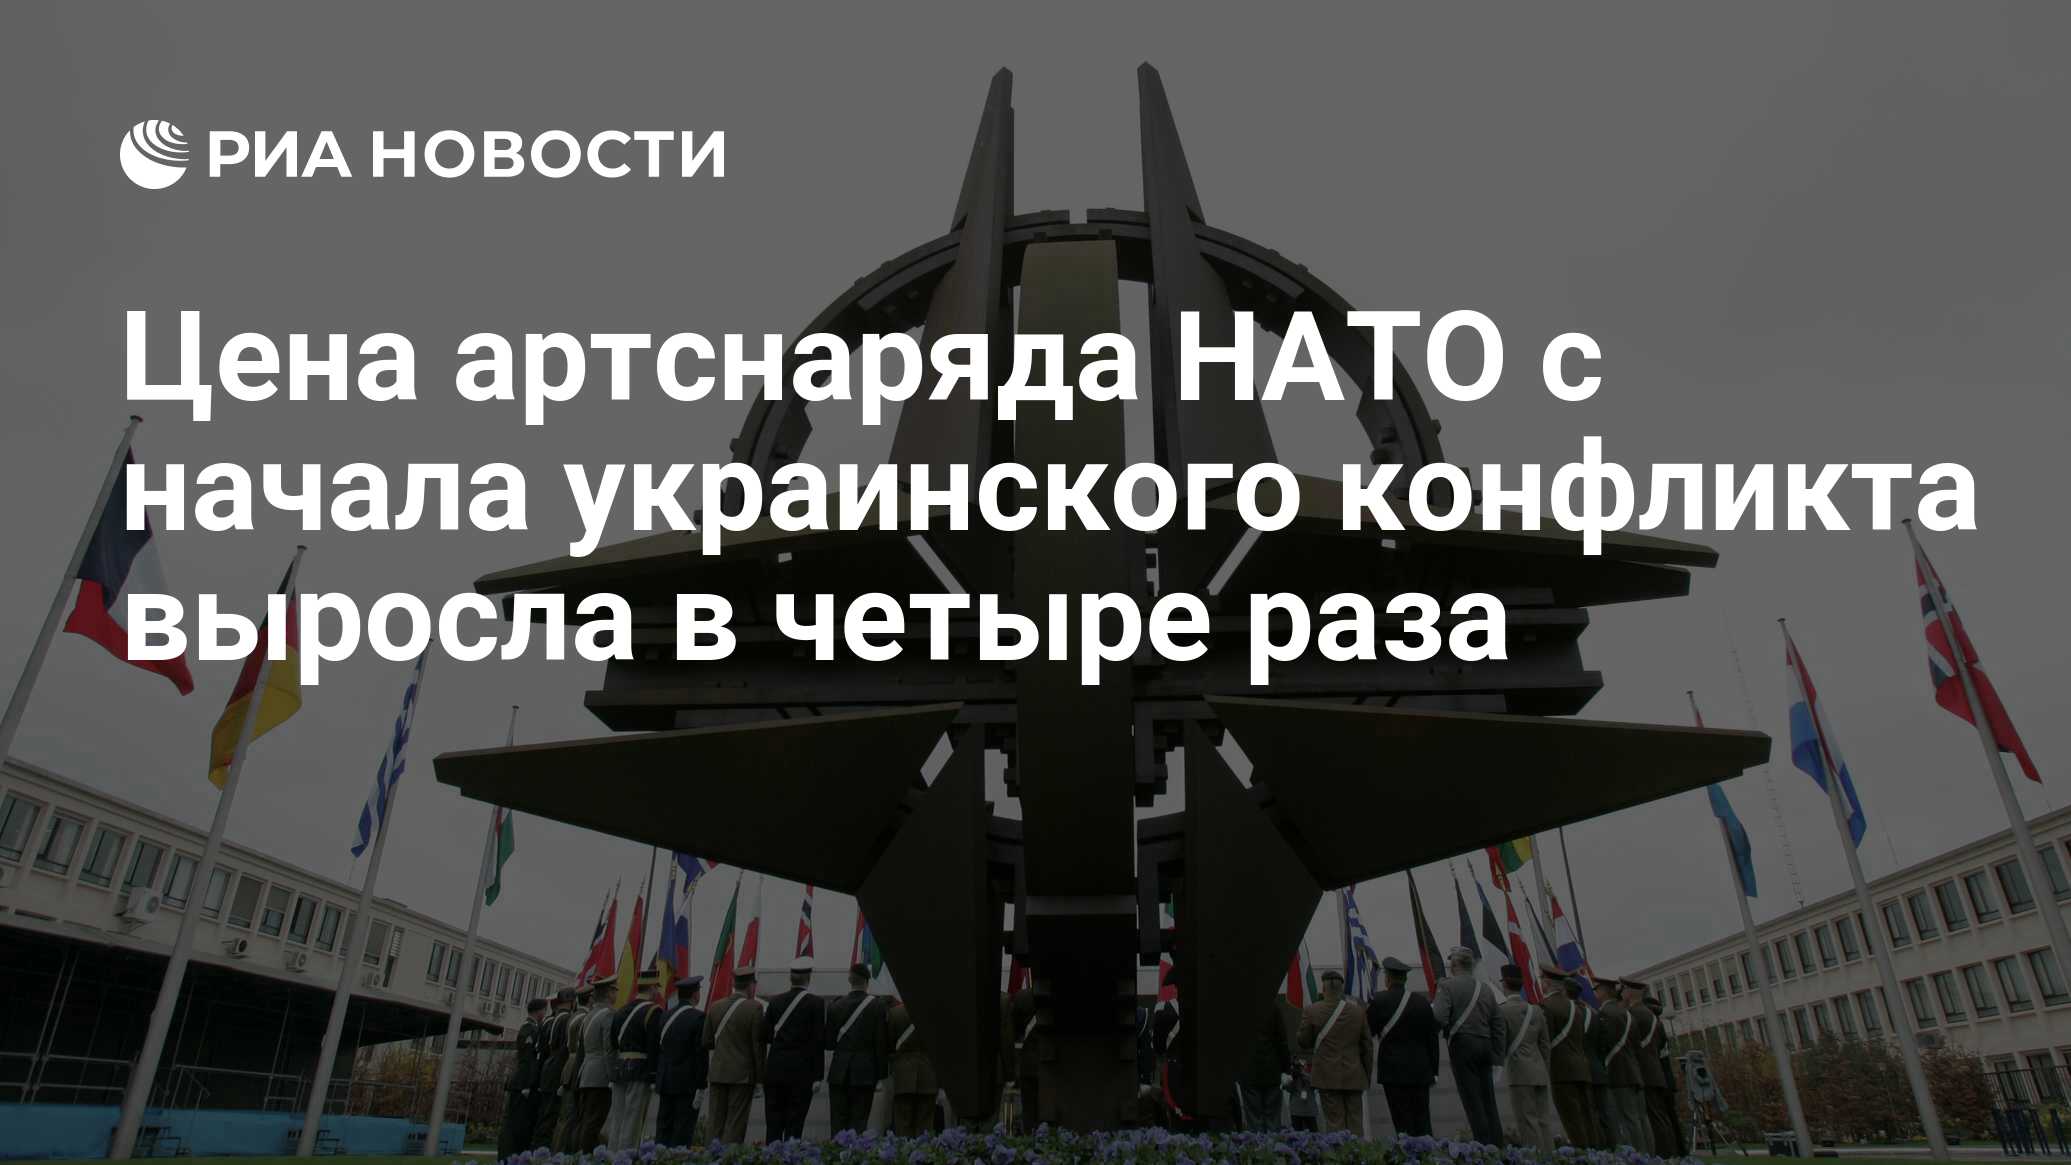 Нато не станет. НАТО И Россия. НАТО против РФ. Турция НАТО. НАТО У границ России.